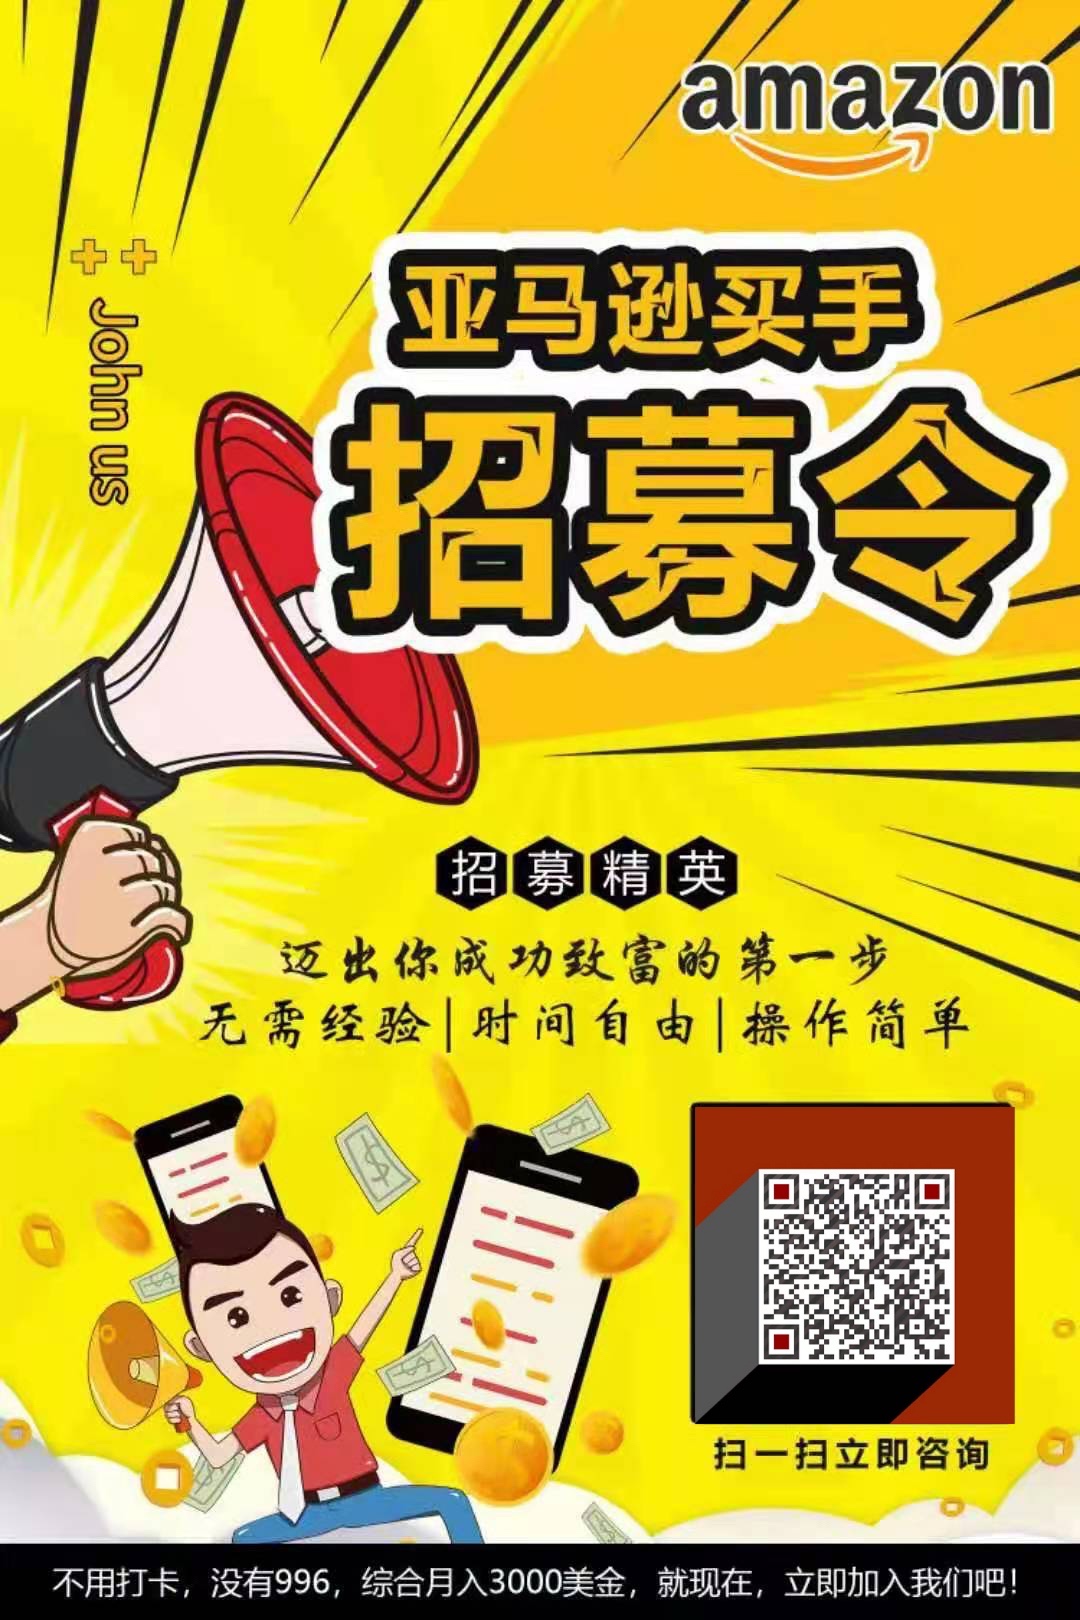 在线招募美国华人兼职买手,免费送产品 群微信二维码